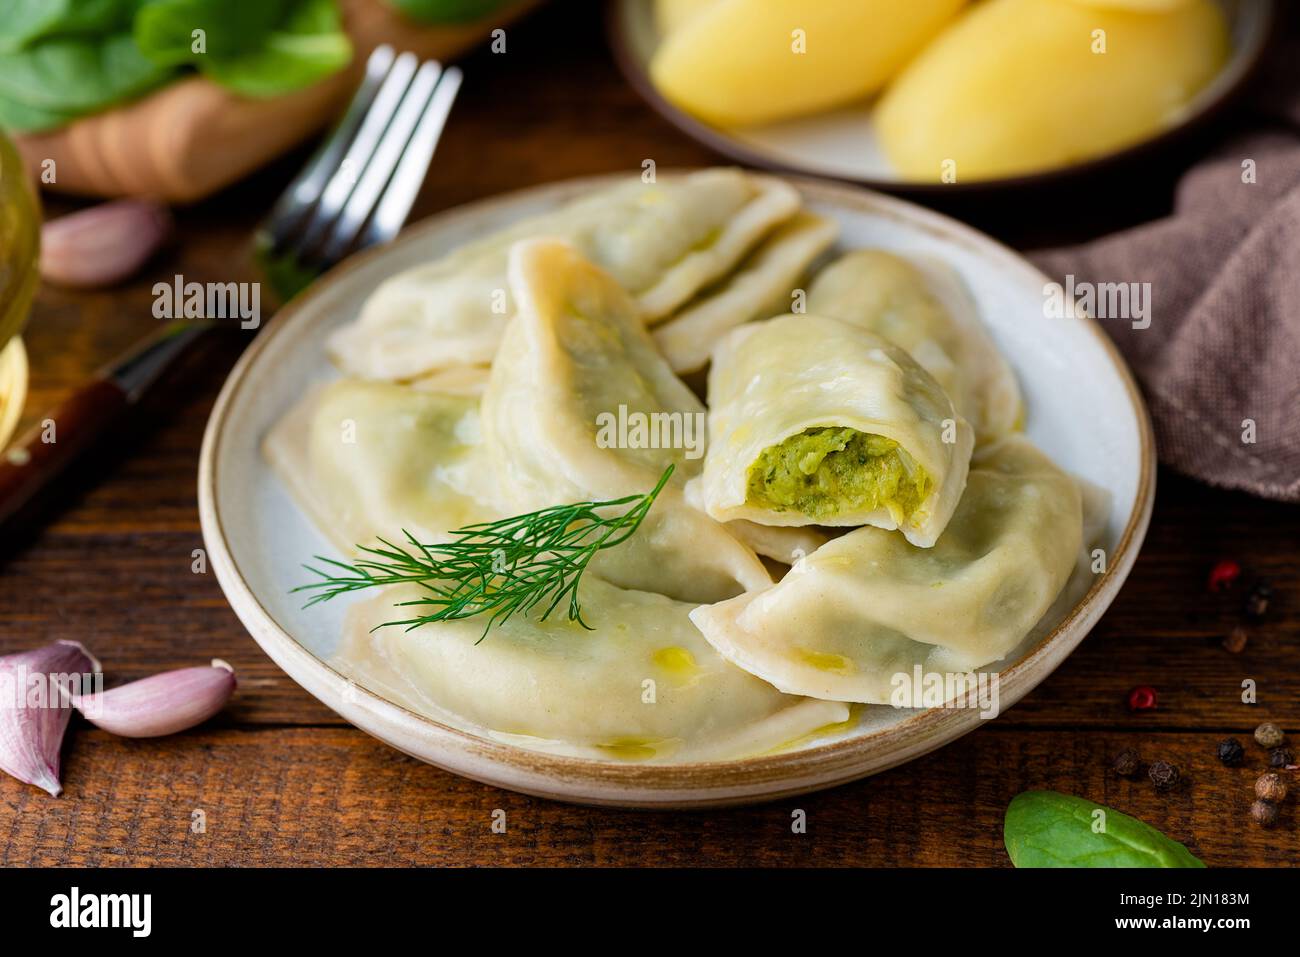 Ukrainische oder polnische Knödel, mit Kartoffeln und Spinatbrei gefüllte Pierogi, serviert mit Olivenöl, Nahaufnahme Stockfoto